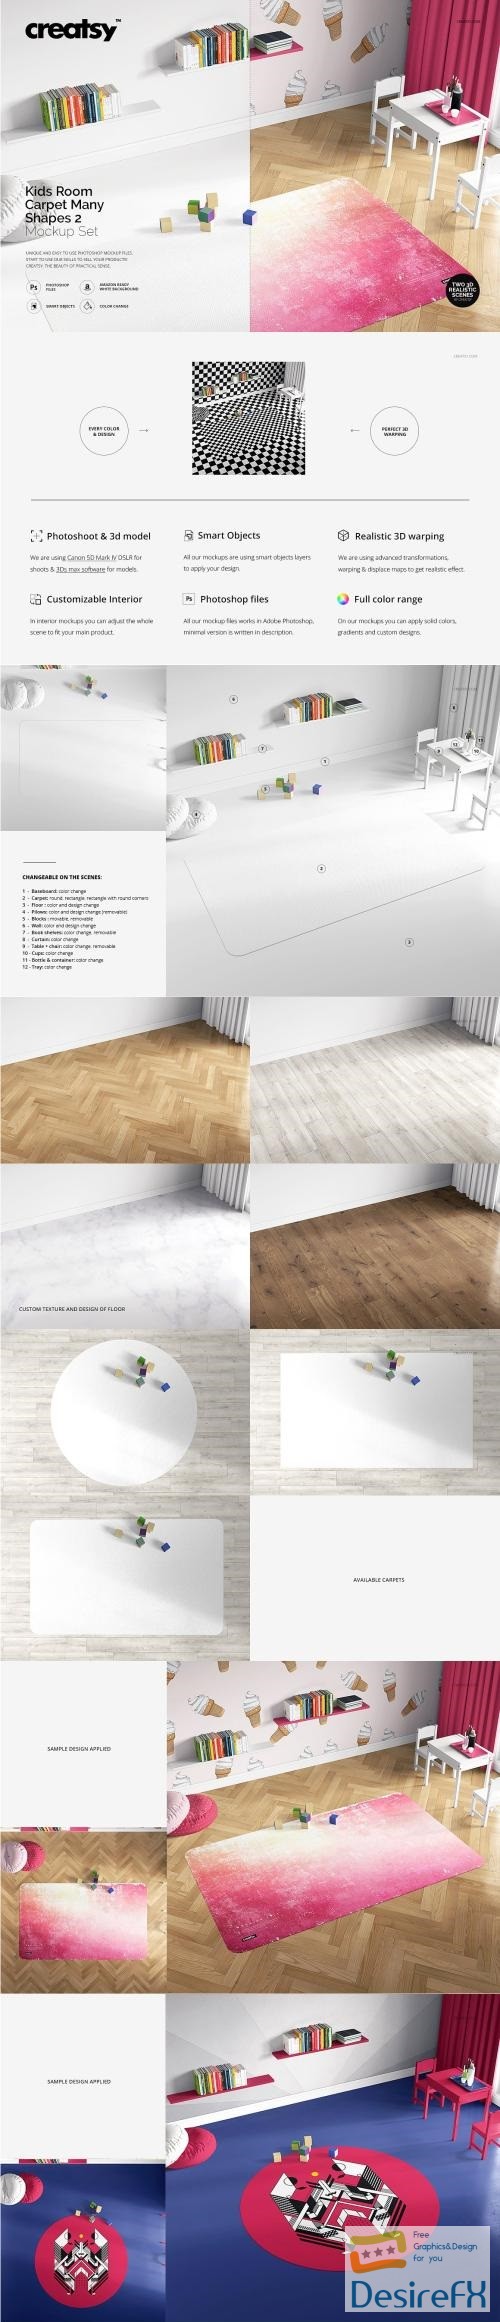 Download Desirefx.com | Download Kids Room Carpet Mockup Set 2